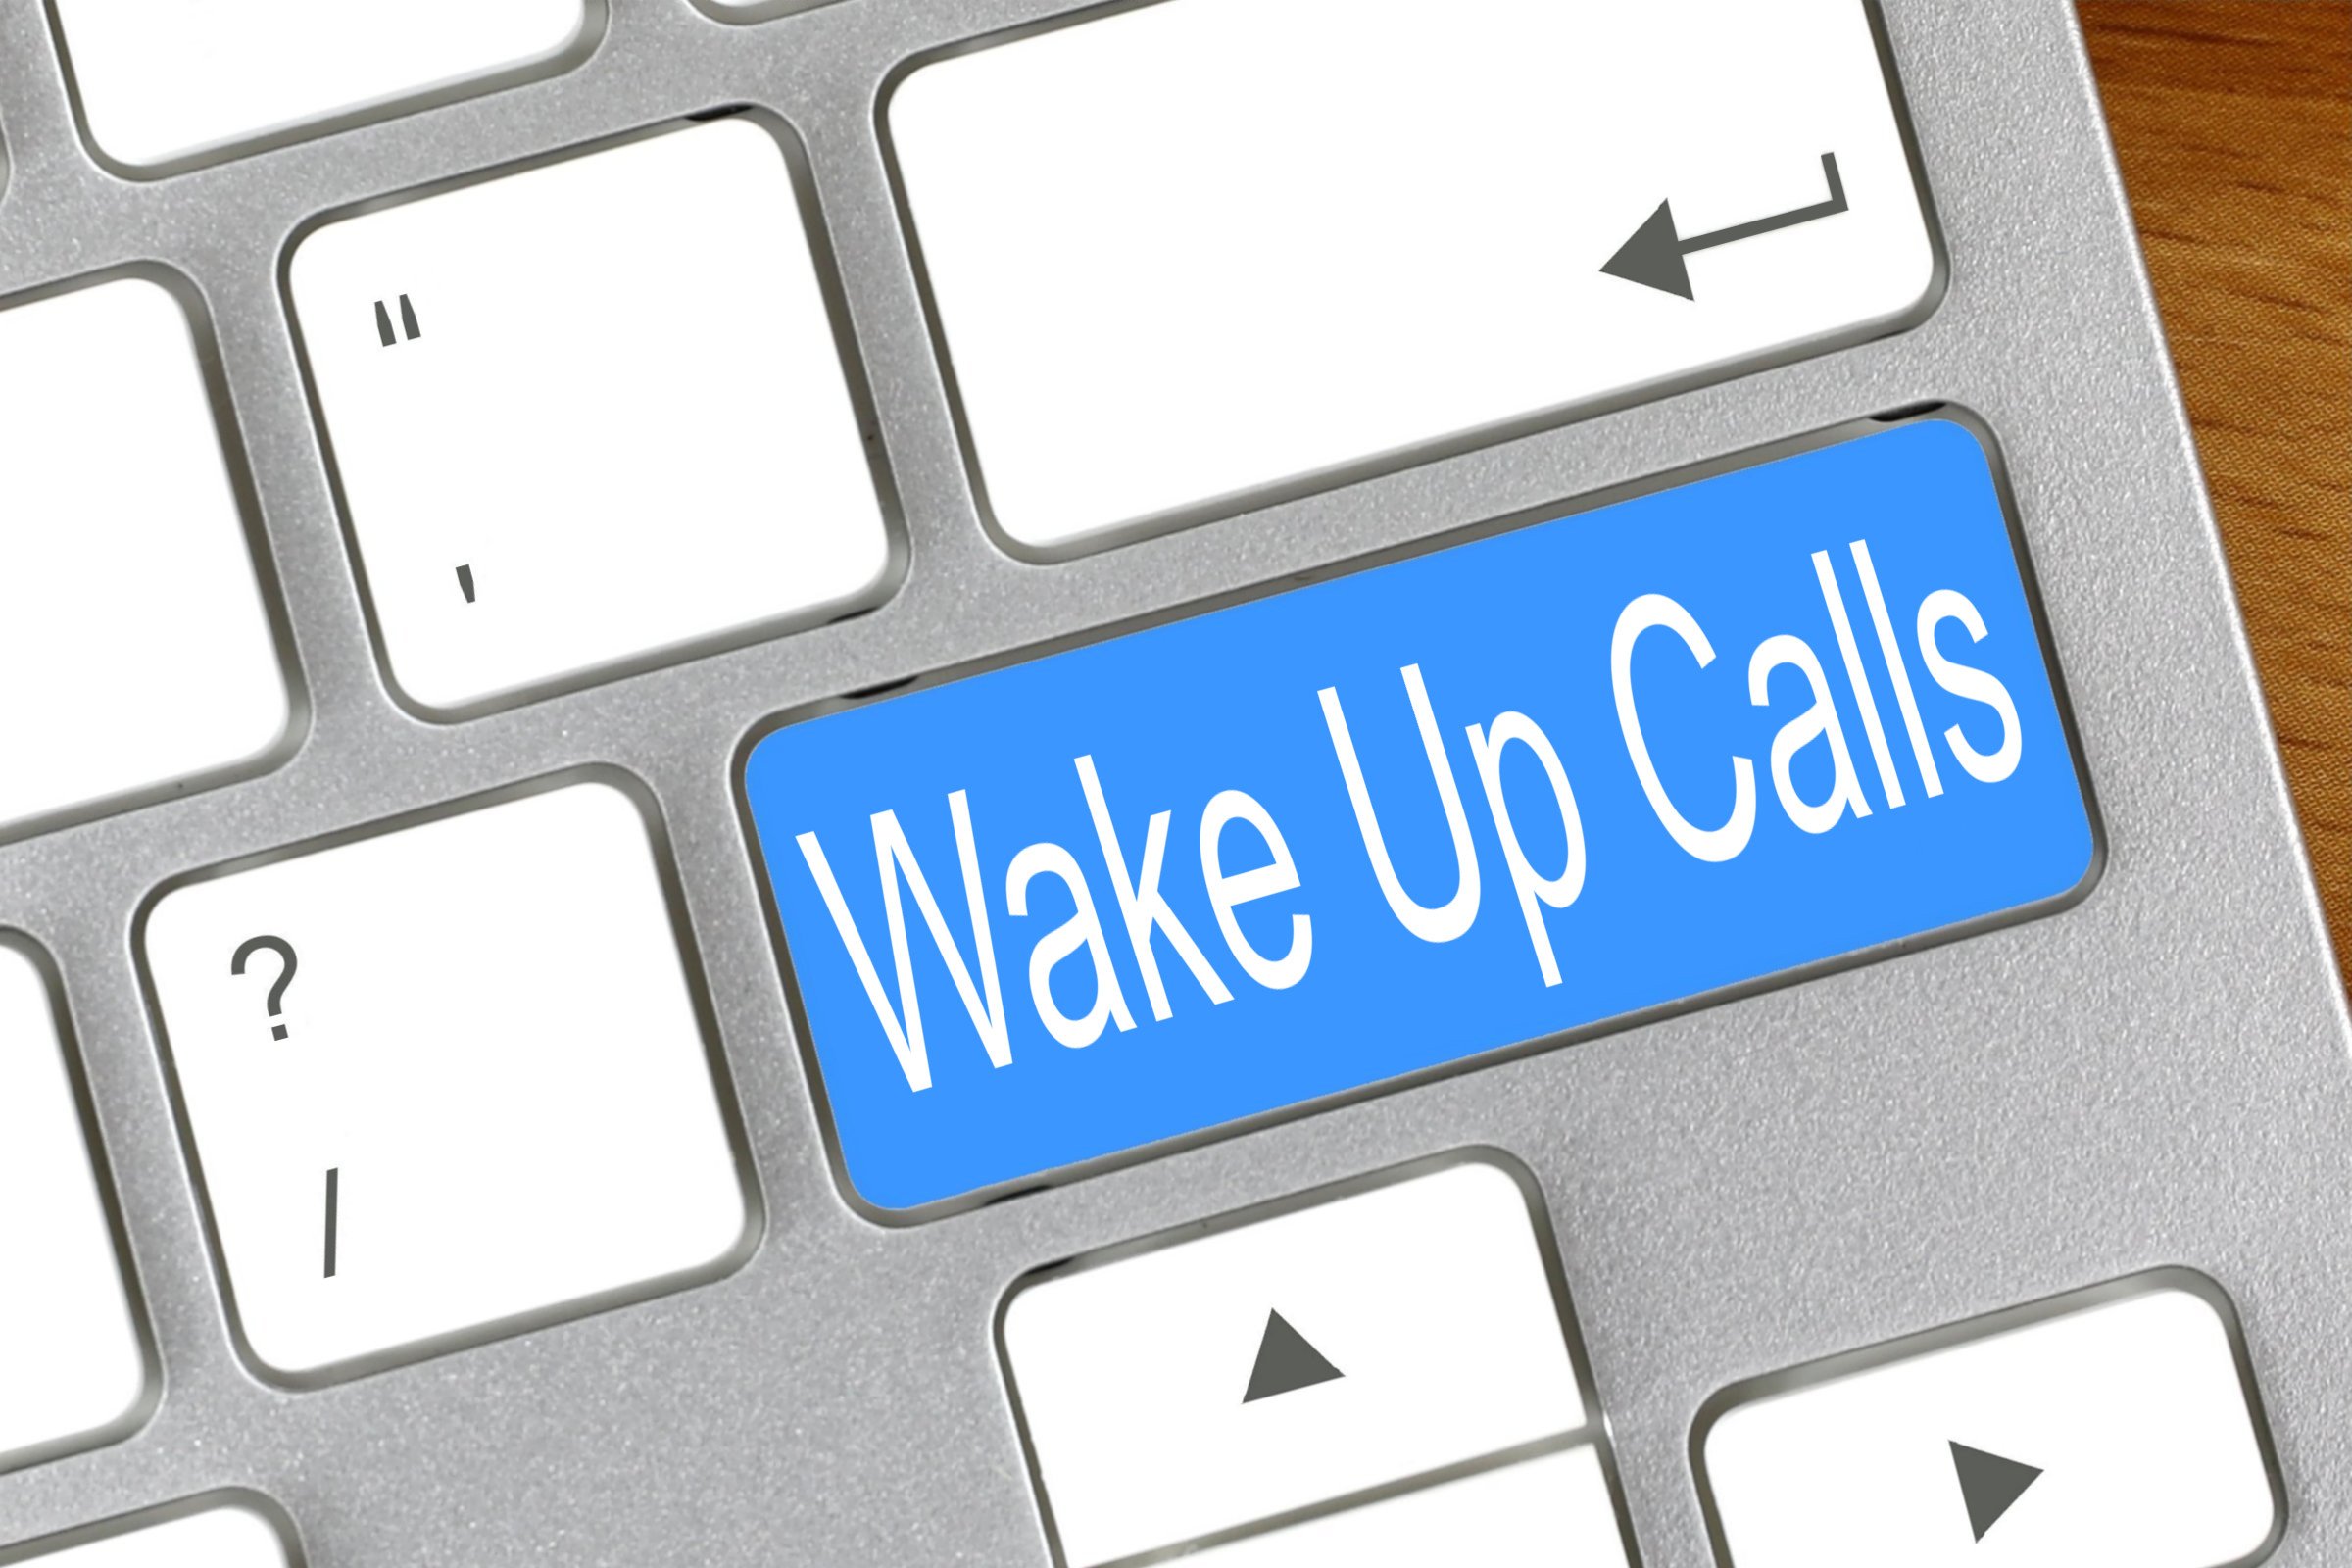 wake up calls